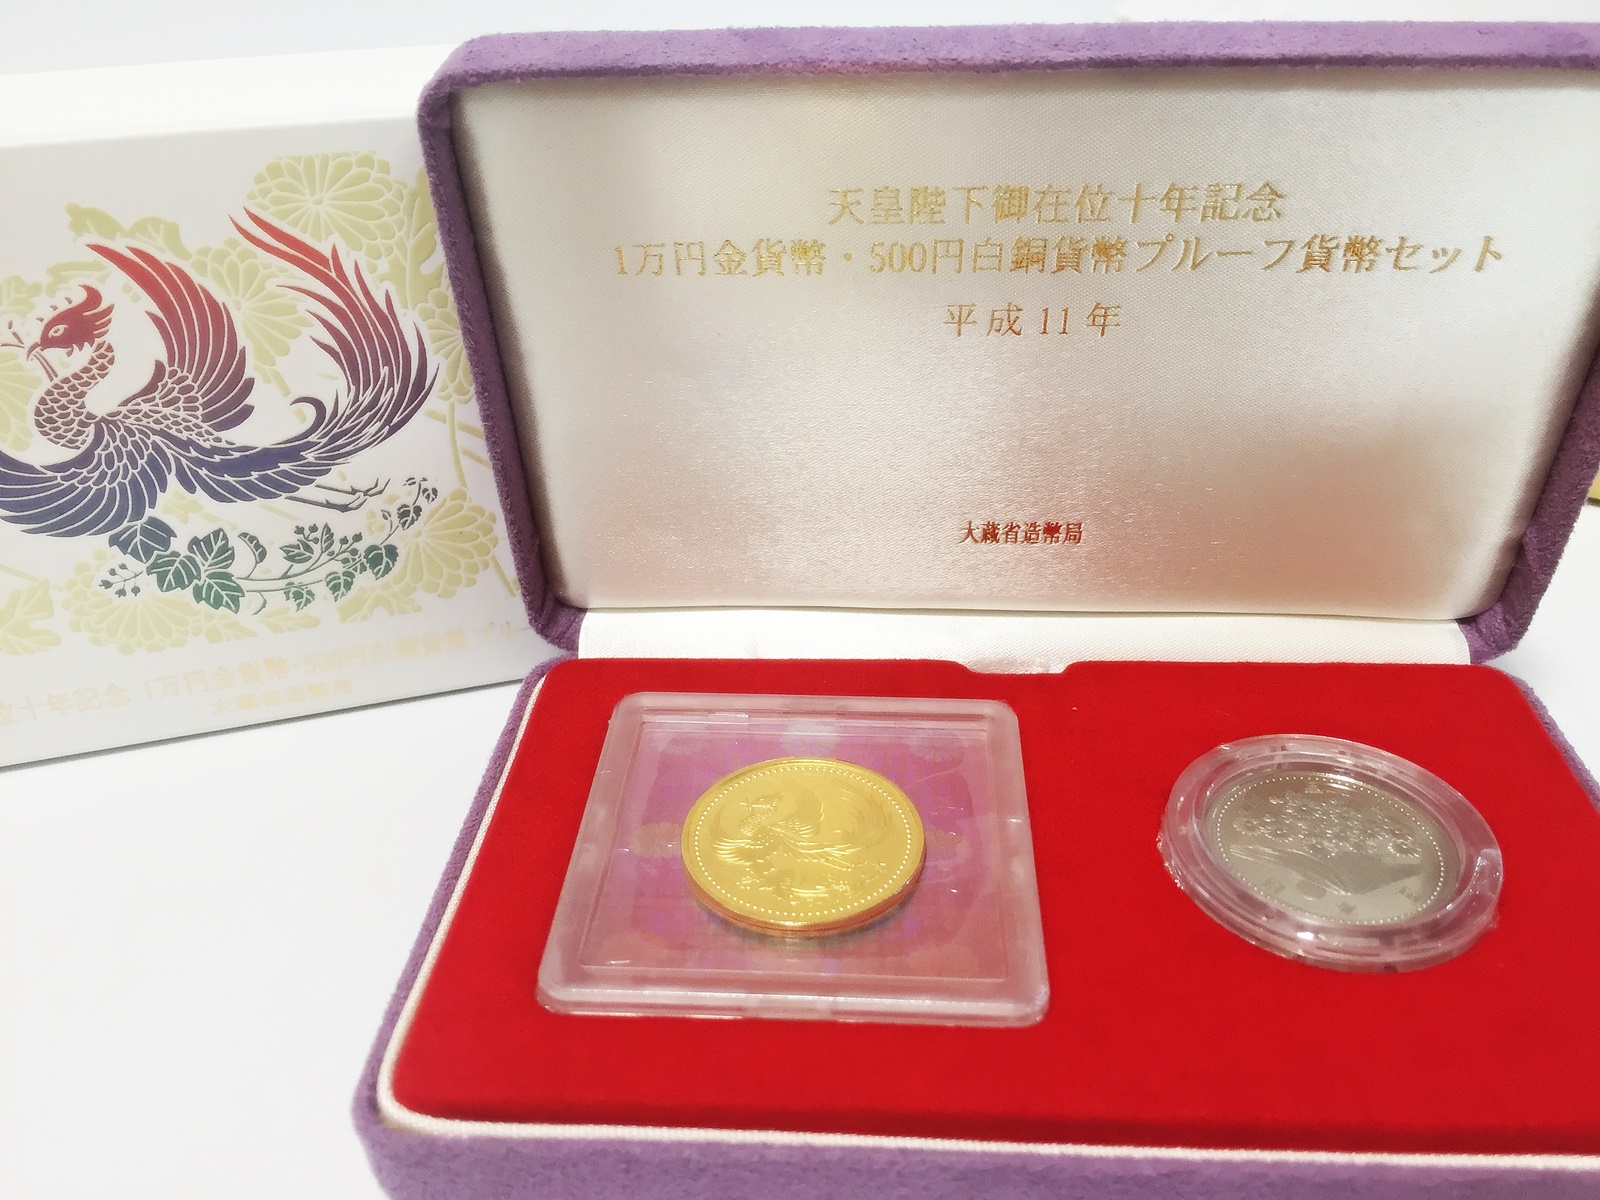 年東京オリンピック開催 その前に以前の記念硬貨を売る理由 質屋かんてい局亀有店 質屋かんてい局 亀有店